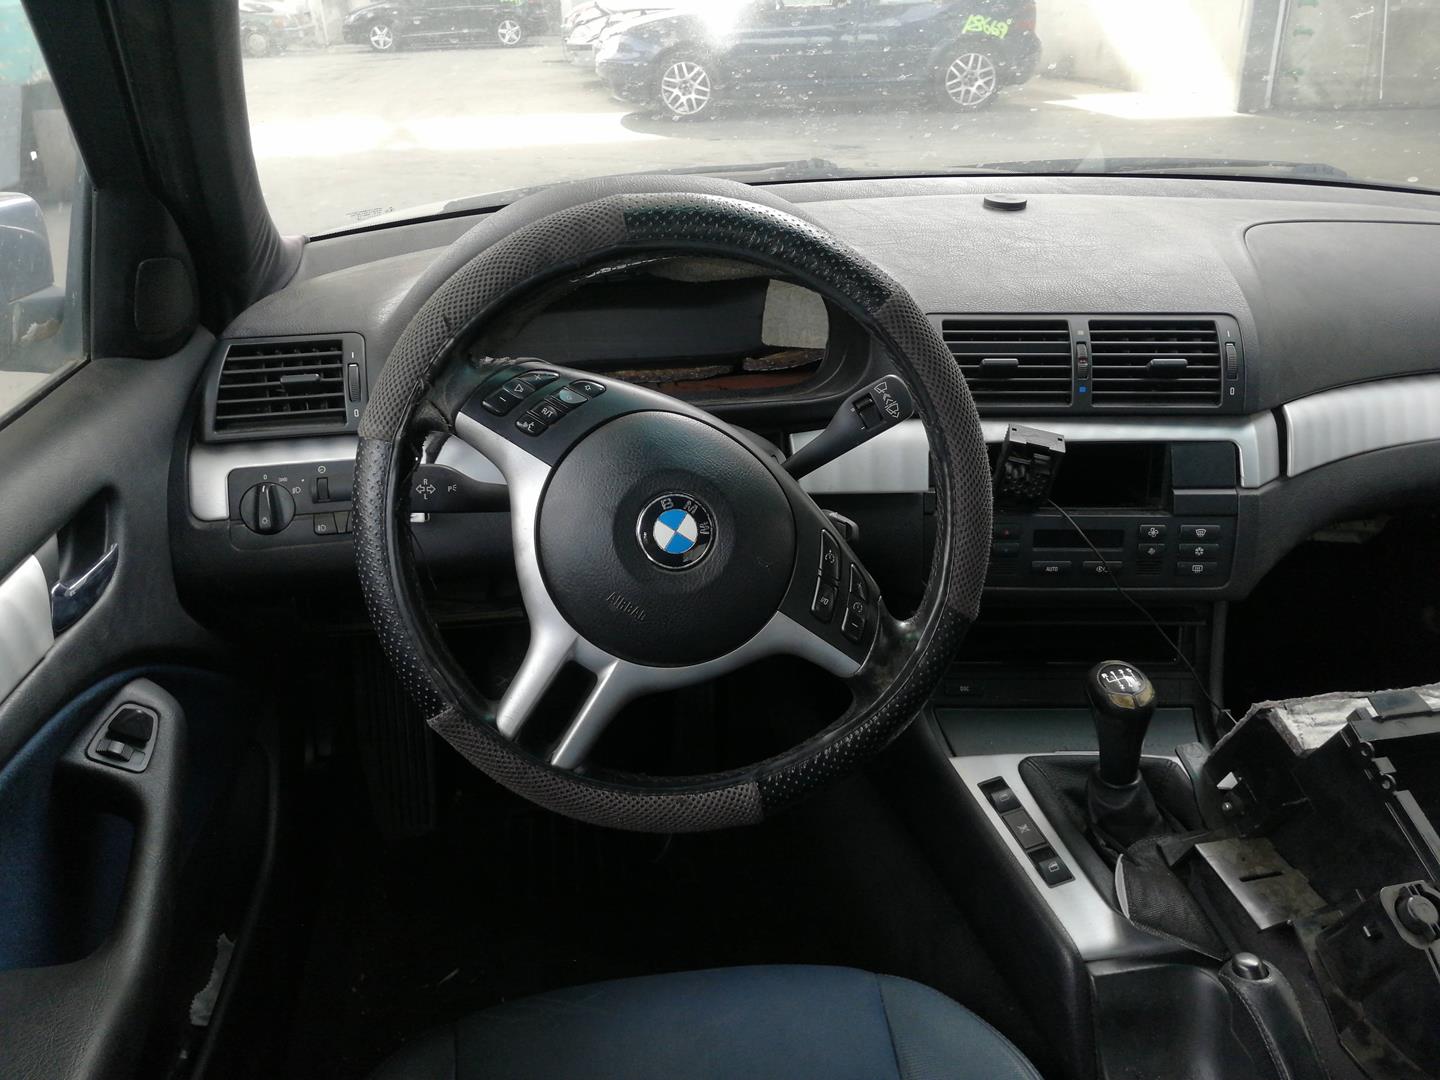 BMW 3 Series E46 (1997-2006) Стеклоочистители спереди 61617003931, ELPARDER/IZQ 21104839